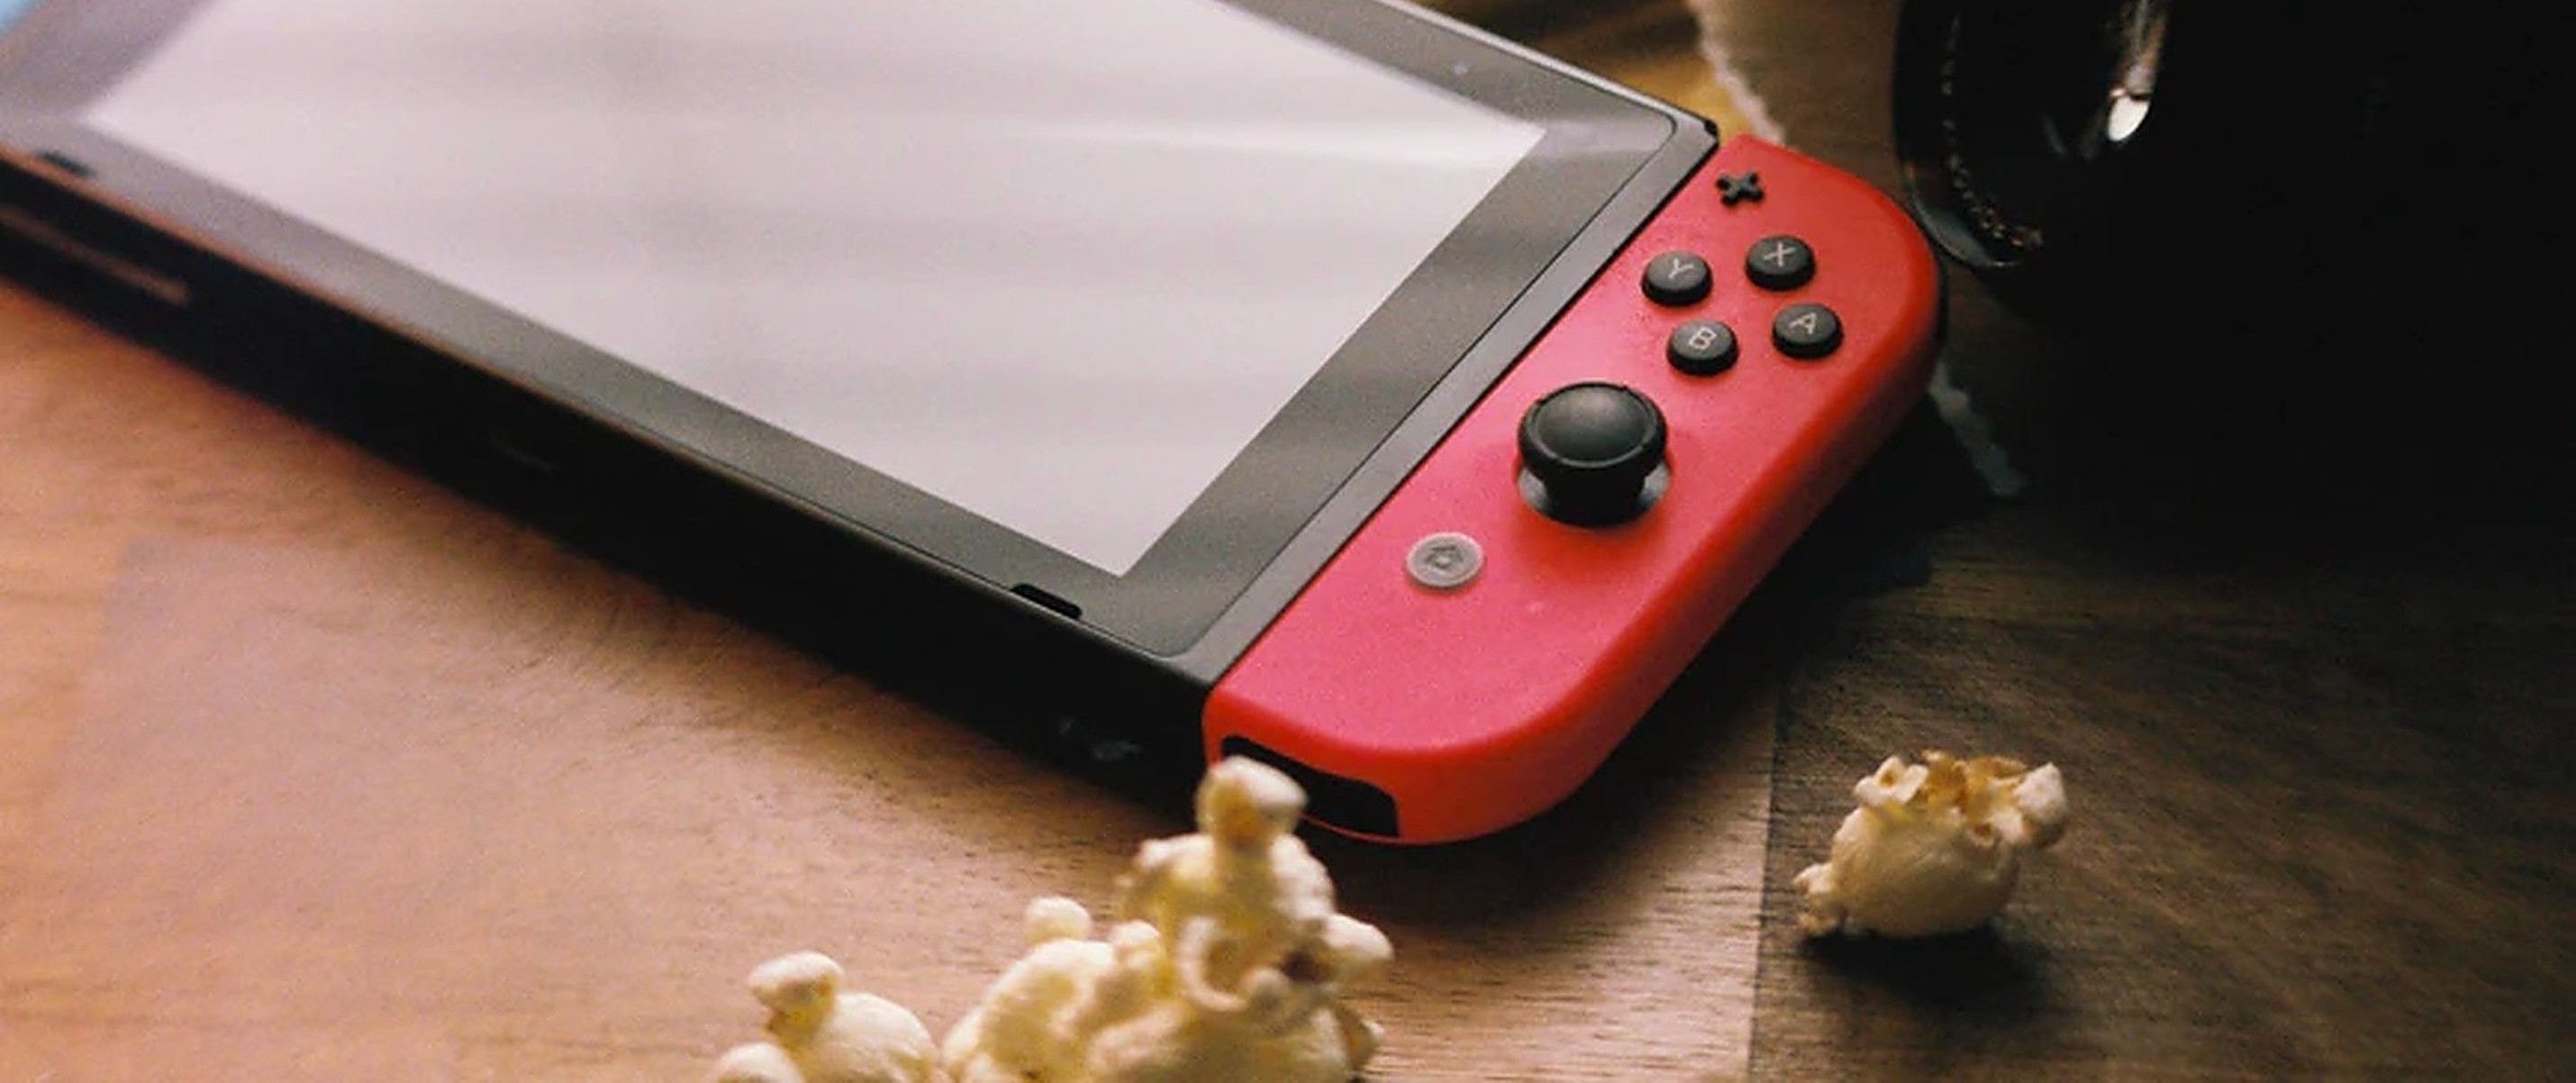 Nintendo Switch com Android Q tem Netflix, Spotify e emuladores – Tecnoblog